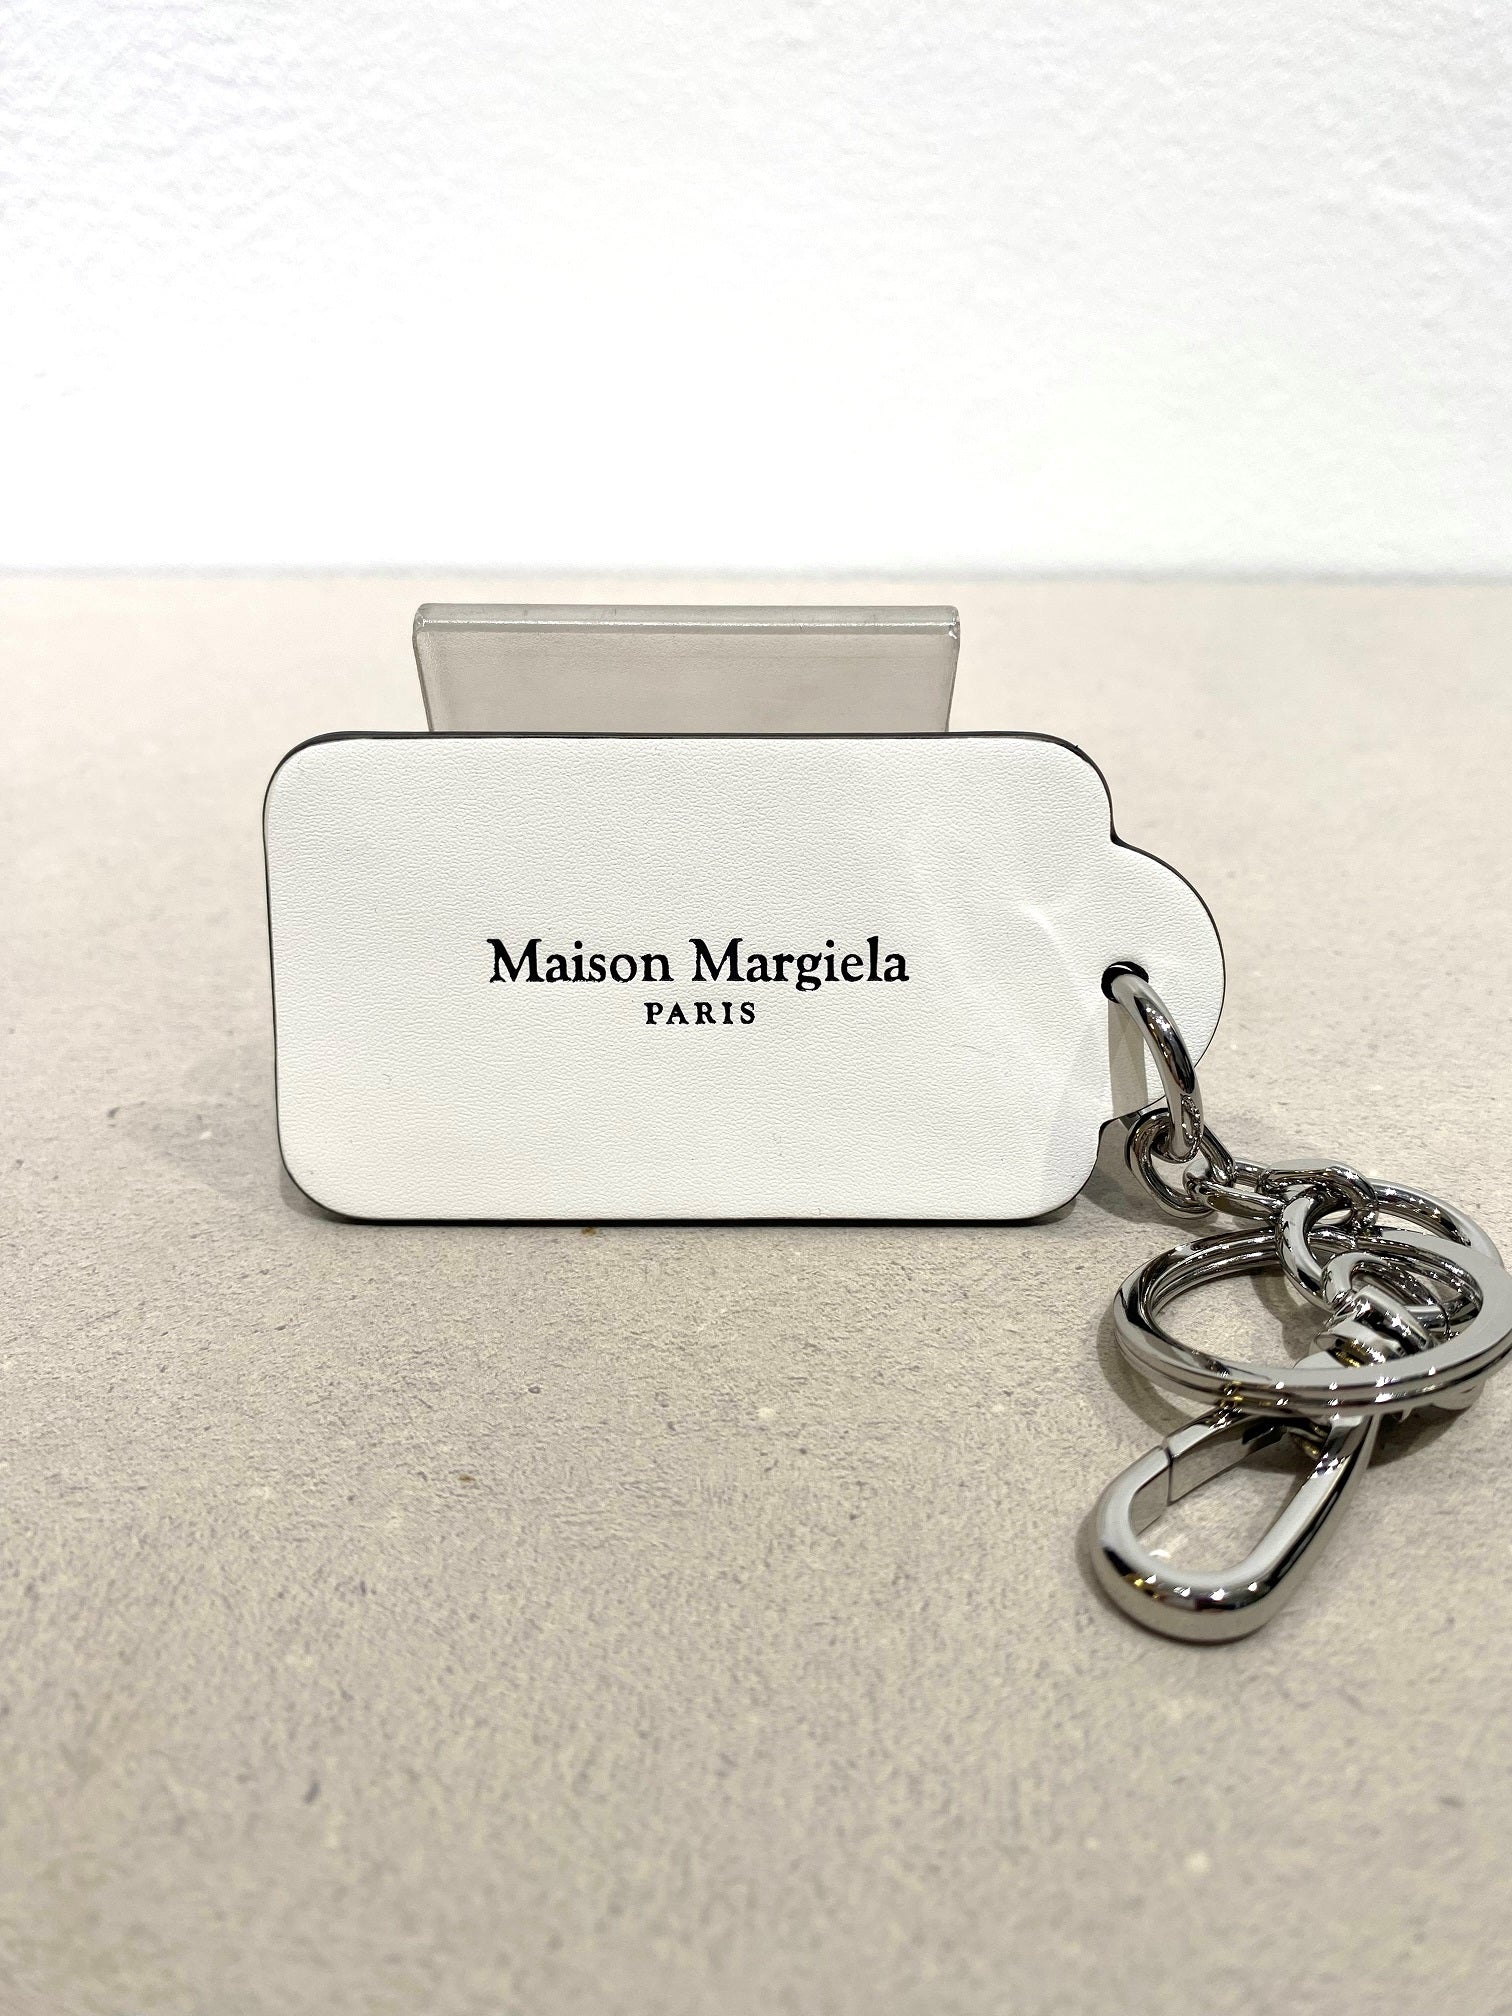 【100%新品得価】Maison Margiela キーホルダー メゾンマルジェラ 新品 未使用 小物